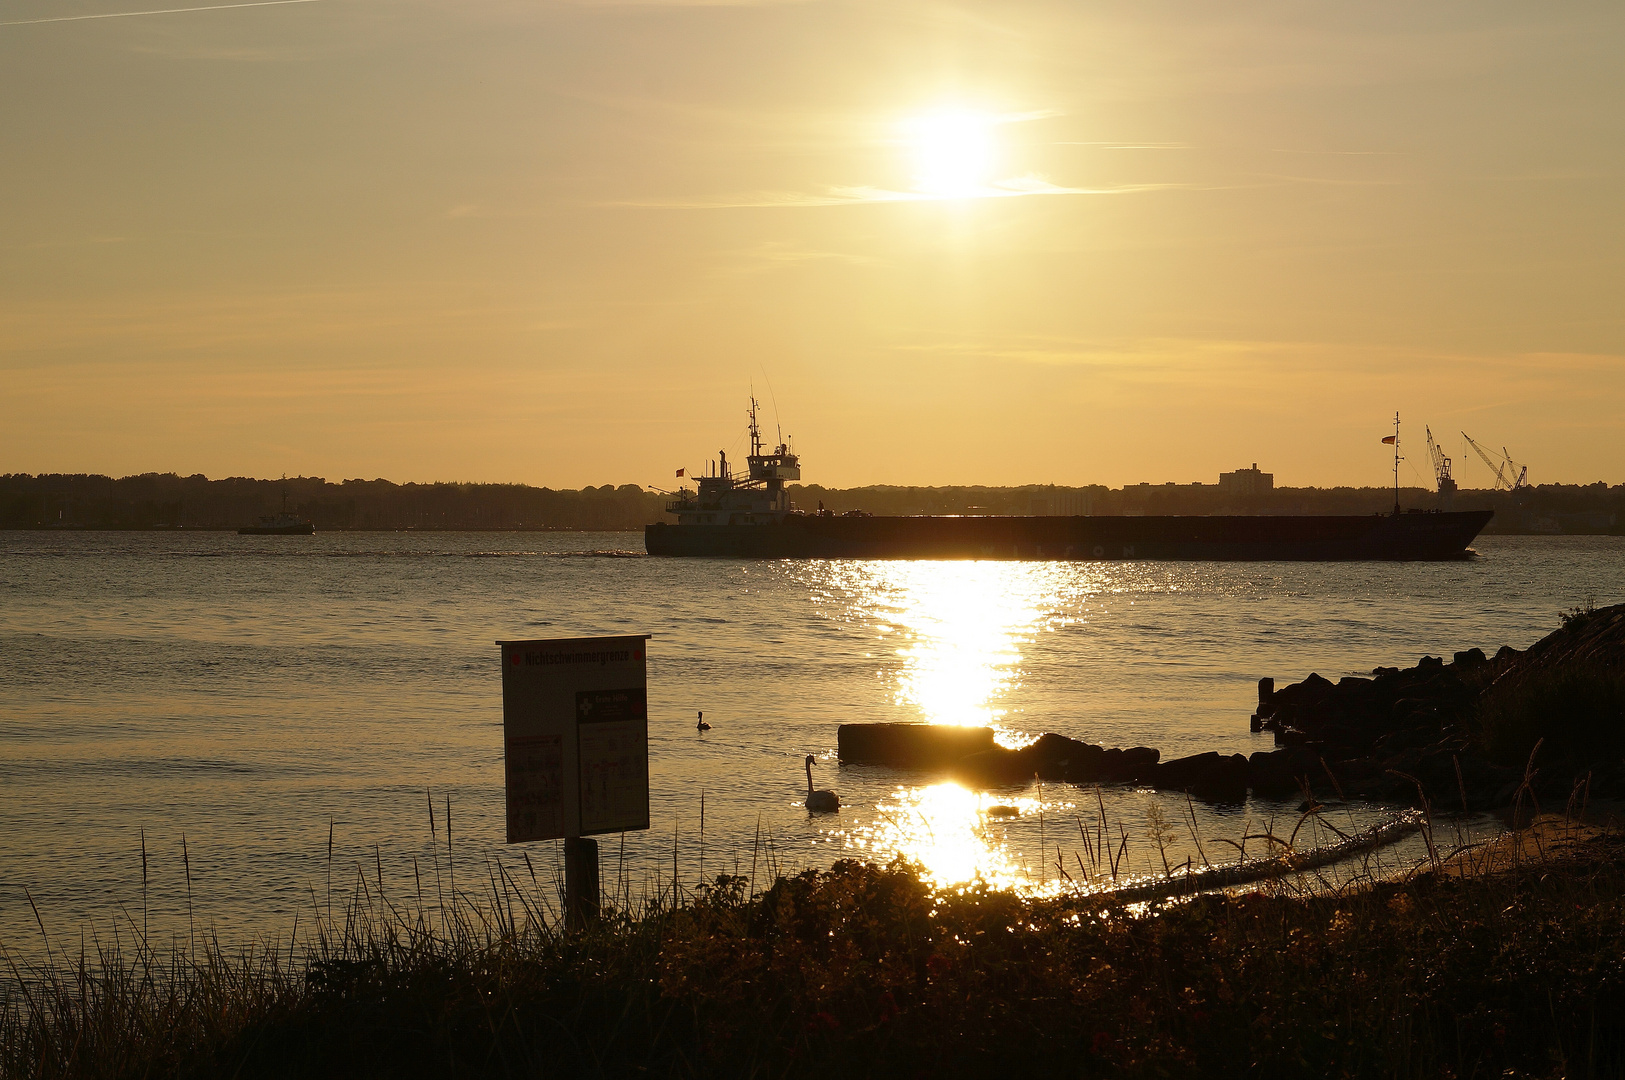 Schiff von der Reederei Wilson im Sonnenuntergang